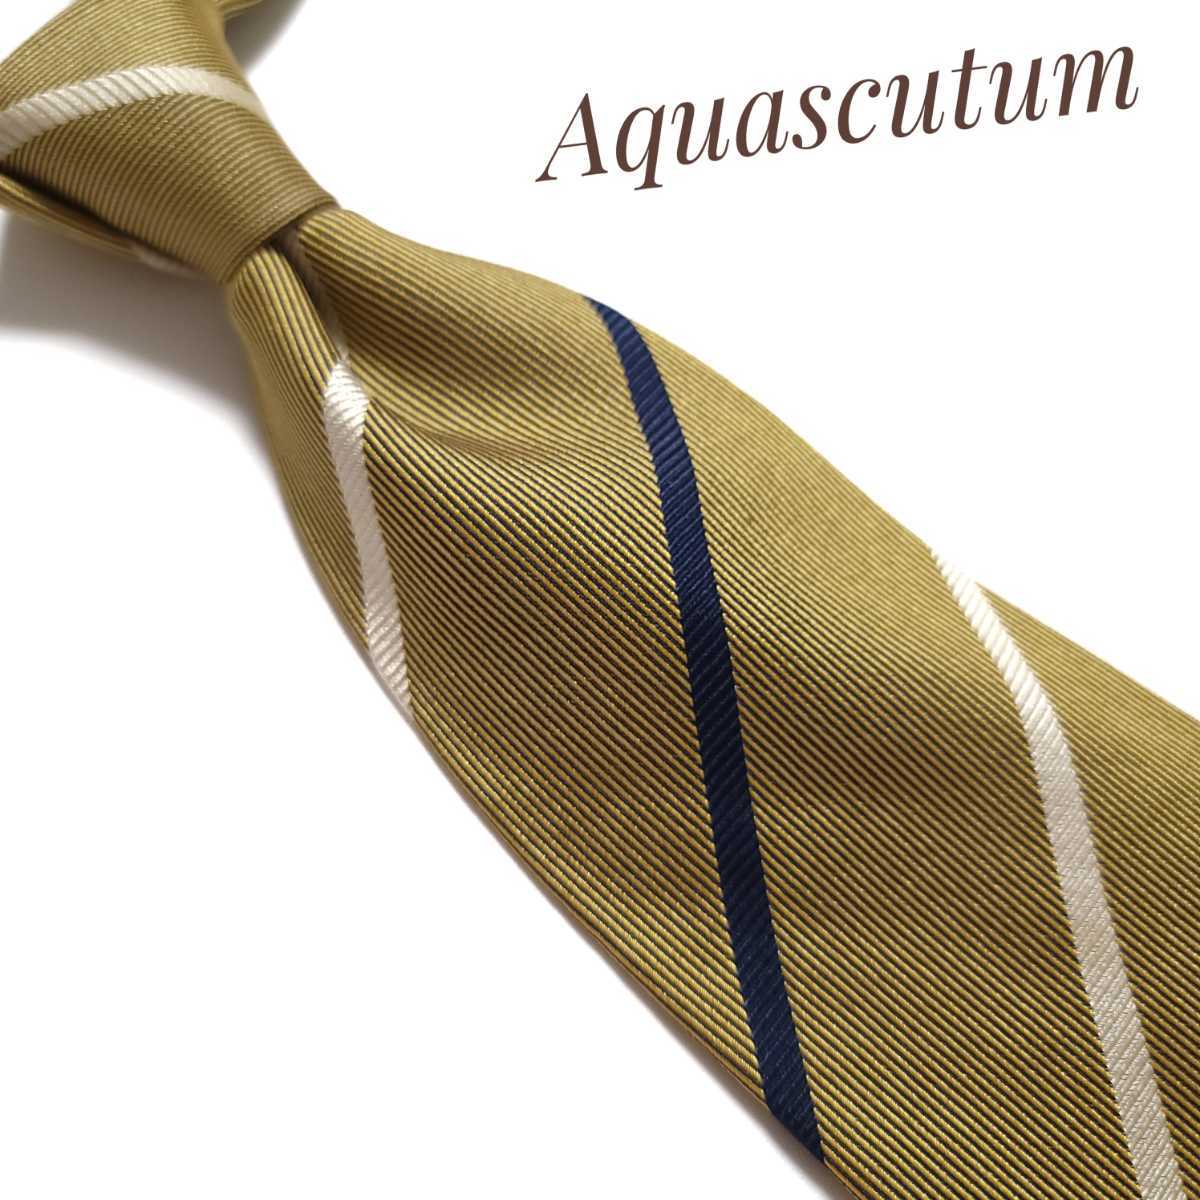 Aquascutum アクアスキュータム ネクタイ ブランド ネイビー 黄 1421_画像1